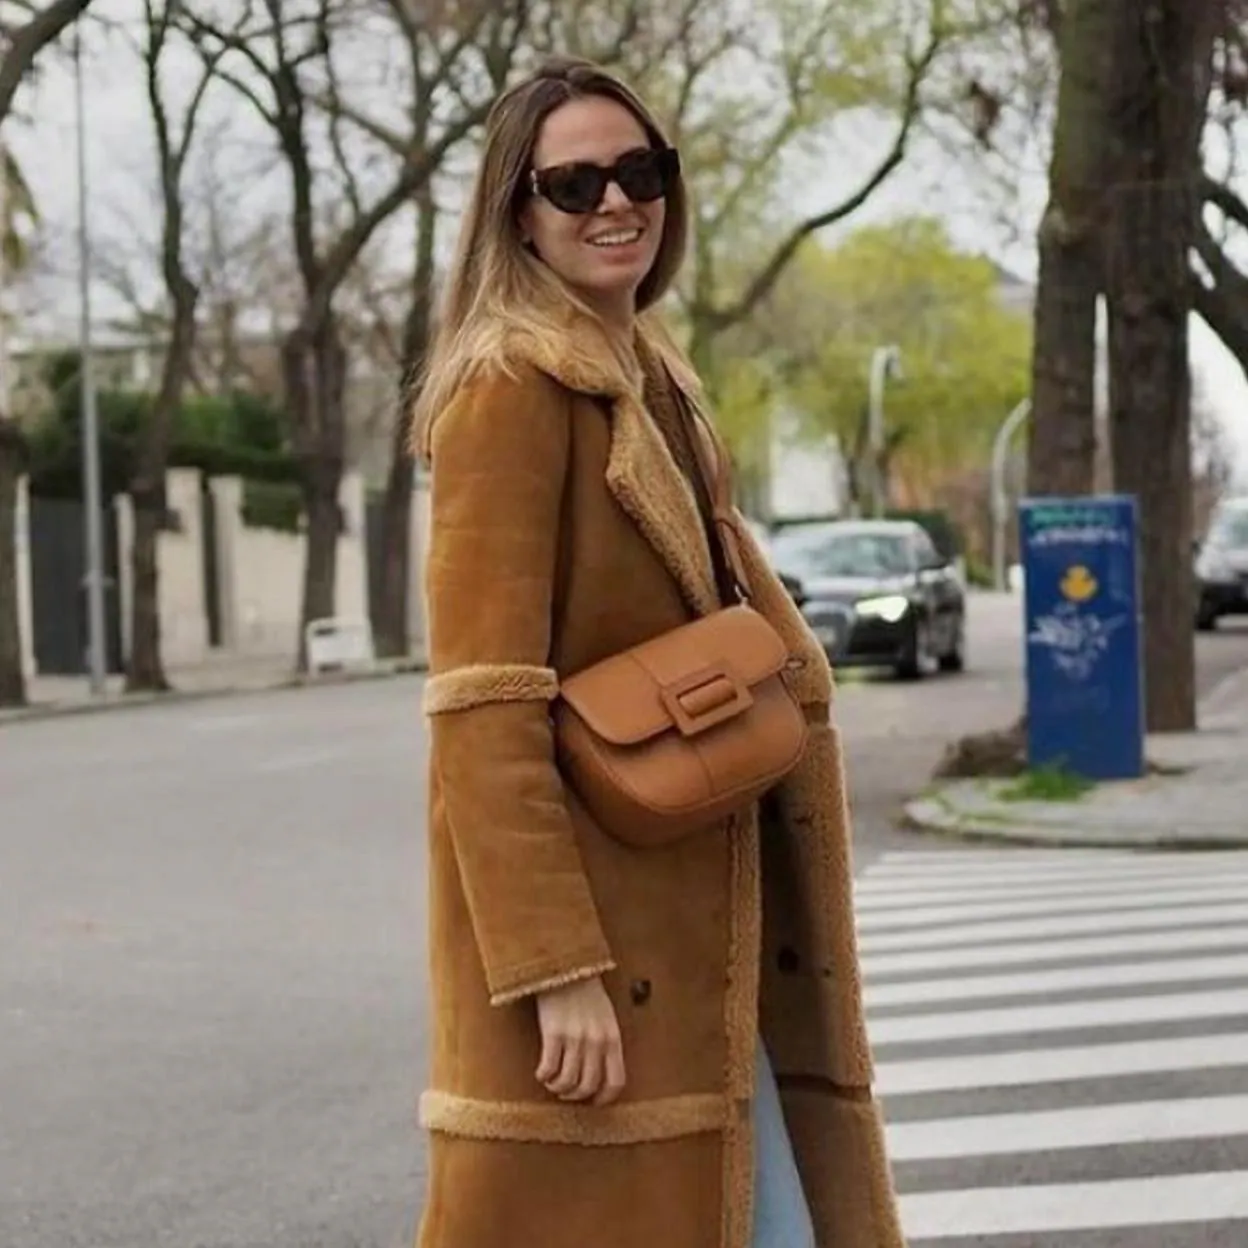 Tenemos bolso de color camel in Spain que ha conquistado Instagram porque es práctico, y parece de lujo | Hoy